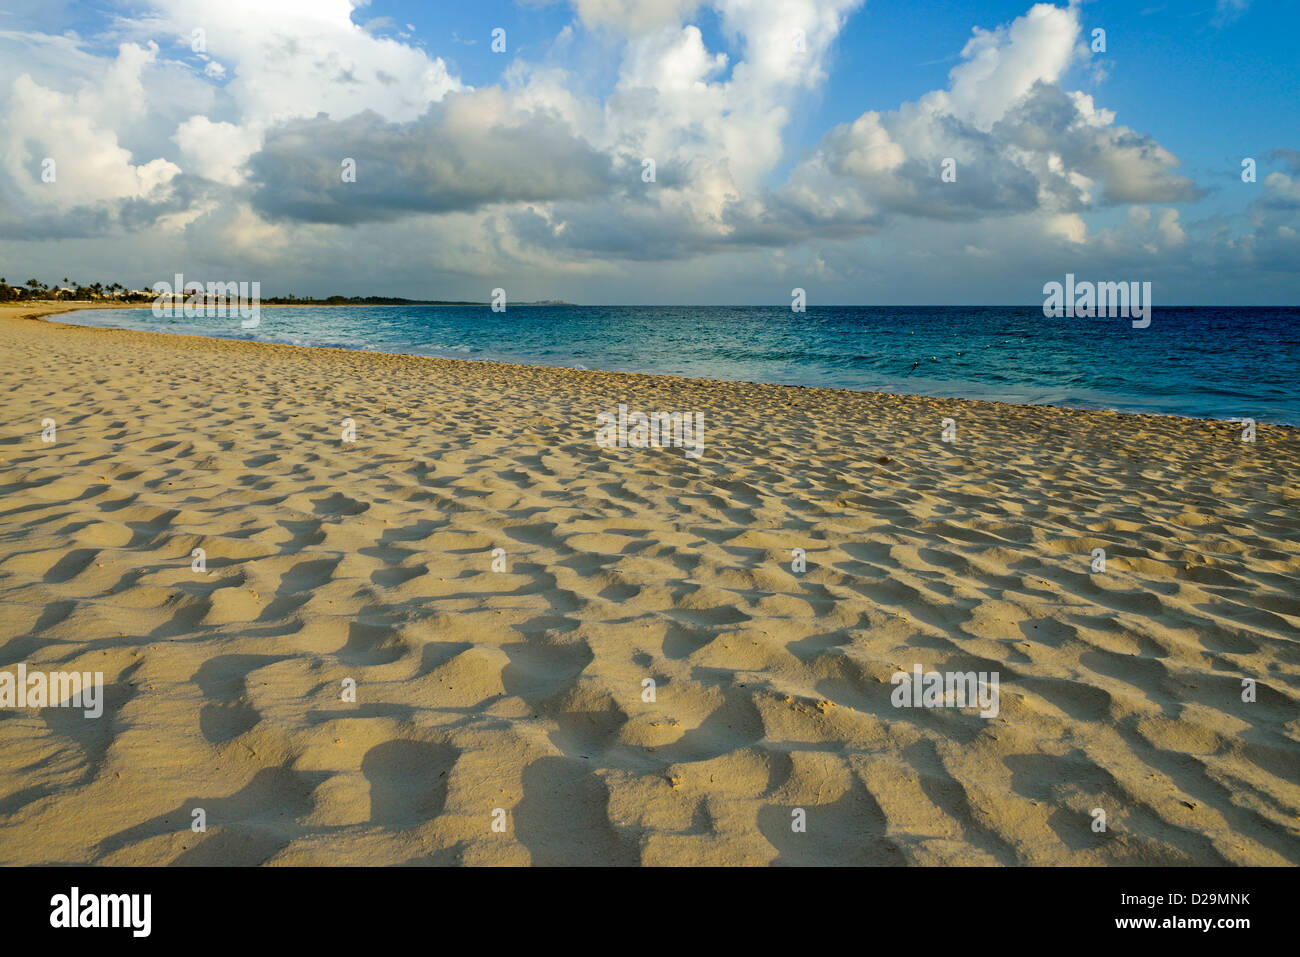 Beautiful sandy beach at sunrise, Punta Cana, Dominican Republic, Caribbean Stock Photo